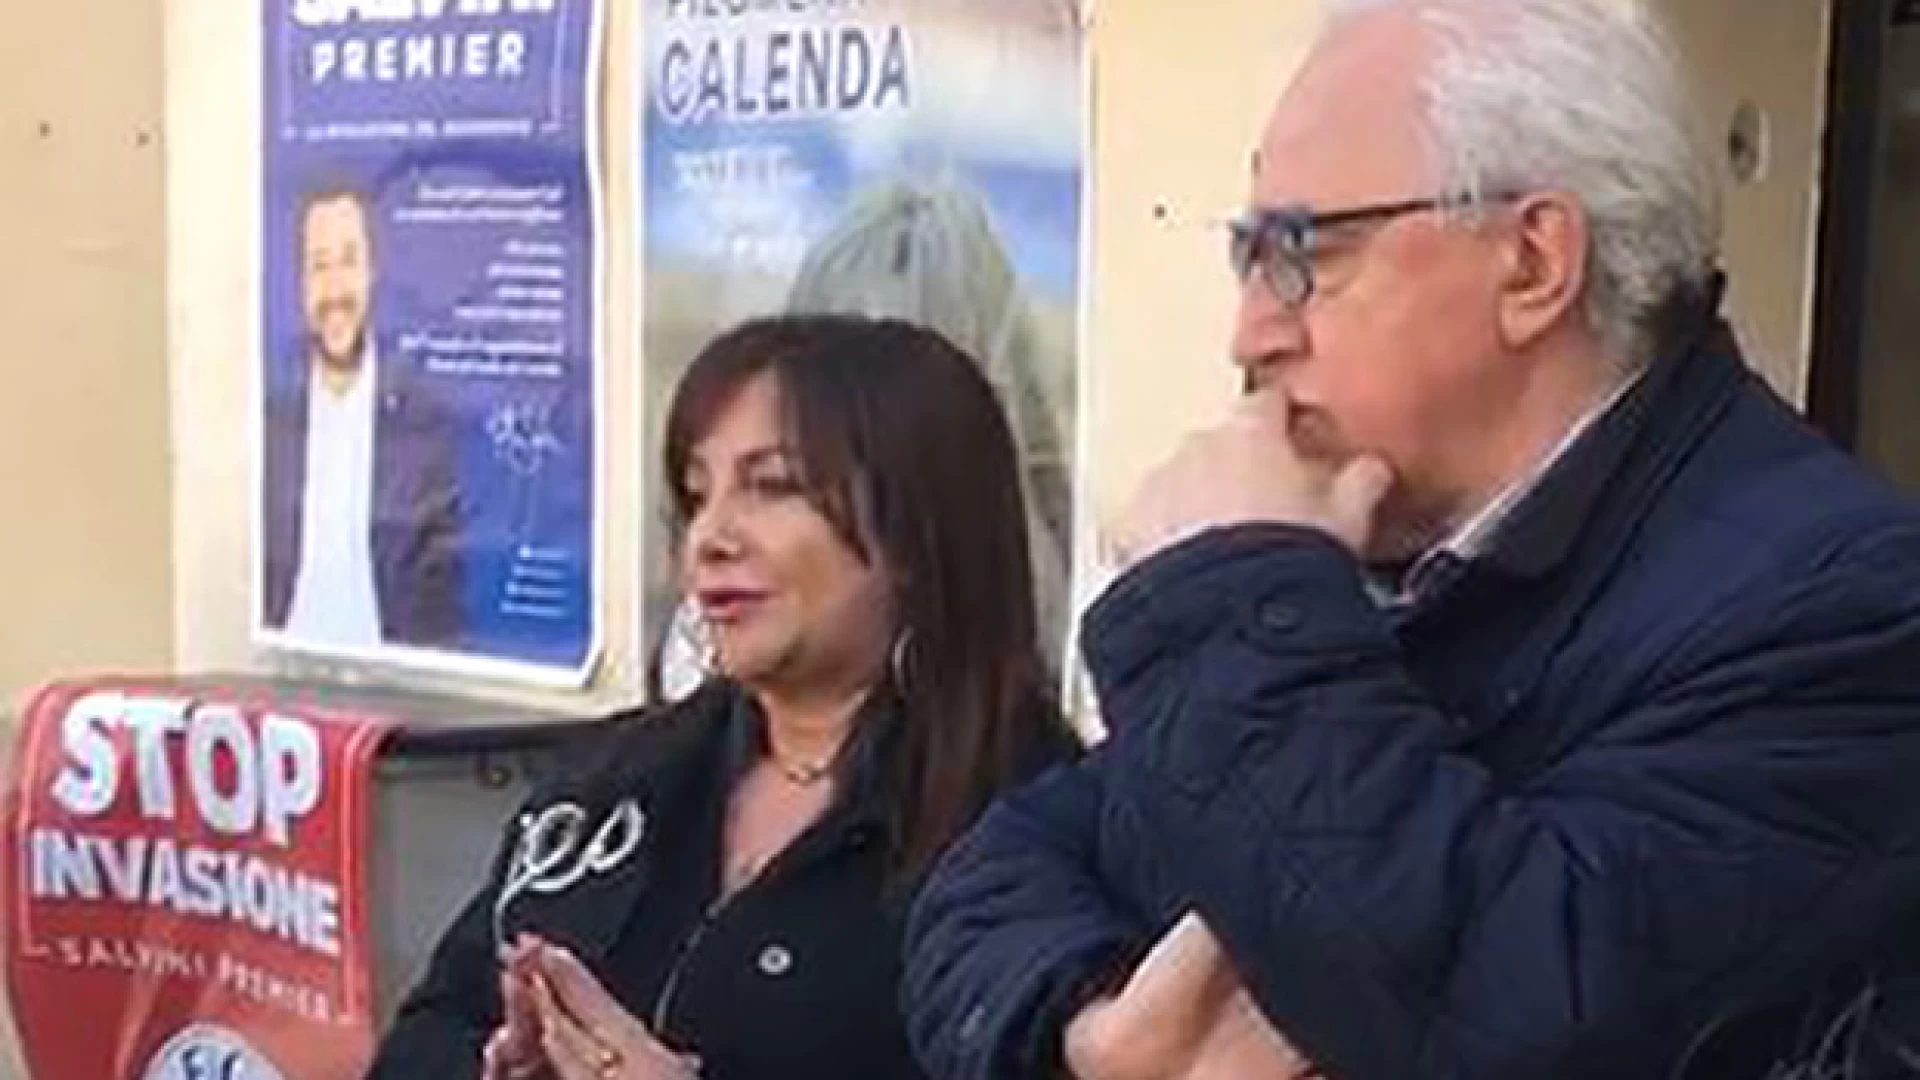 Isernia: Accoglienza migranti. La consigliera regionale Calenda chiede un incontro con il Prefetto Guida.